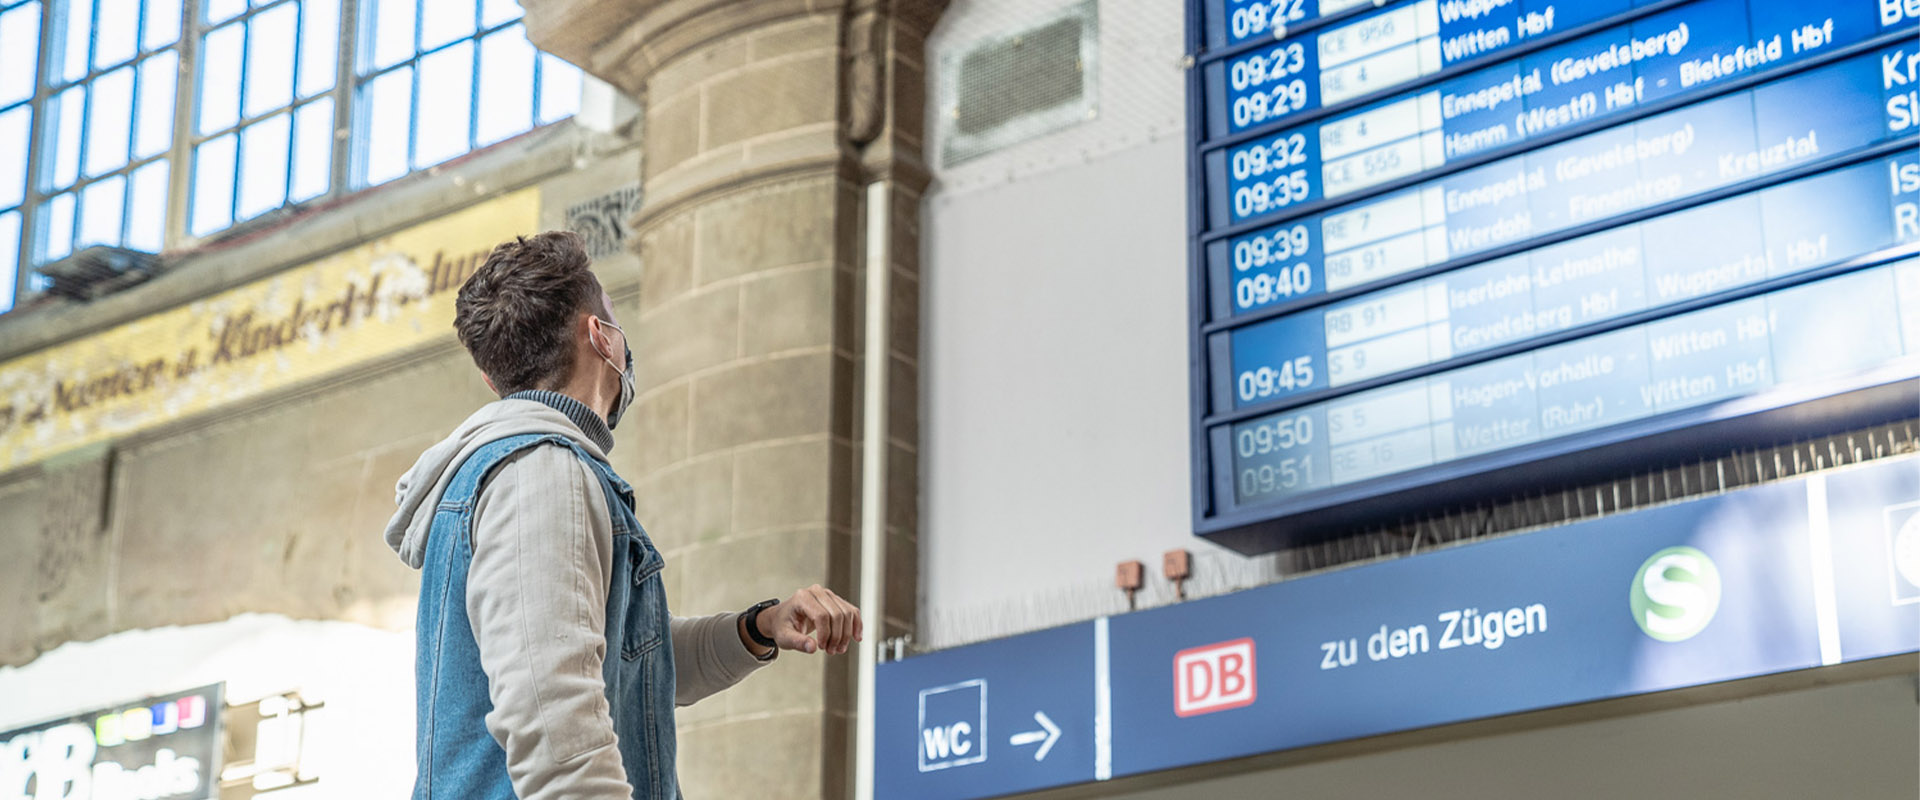 Eine Person blickt an einem Bahnhof auf einen Fahrgastinformationsanzeiger